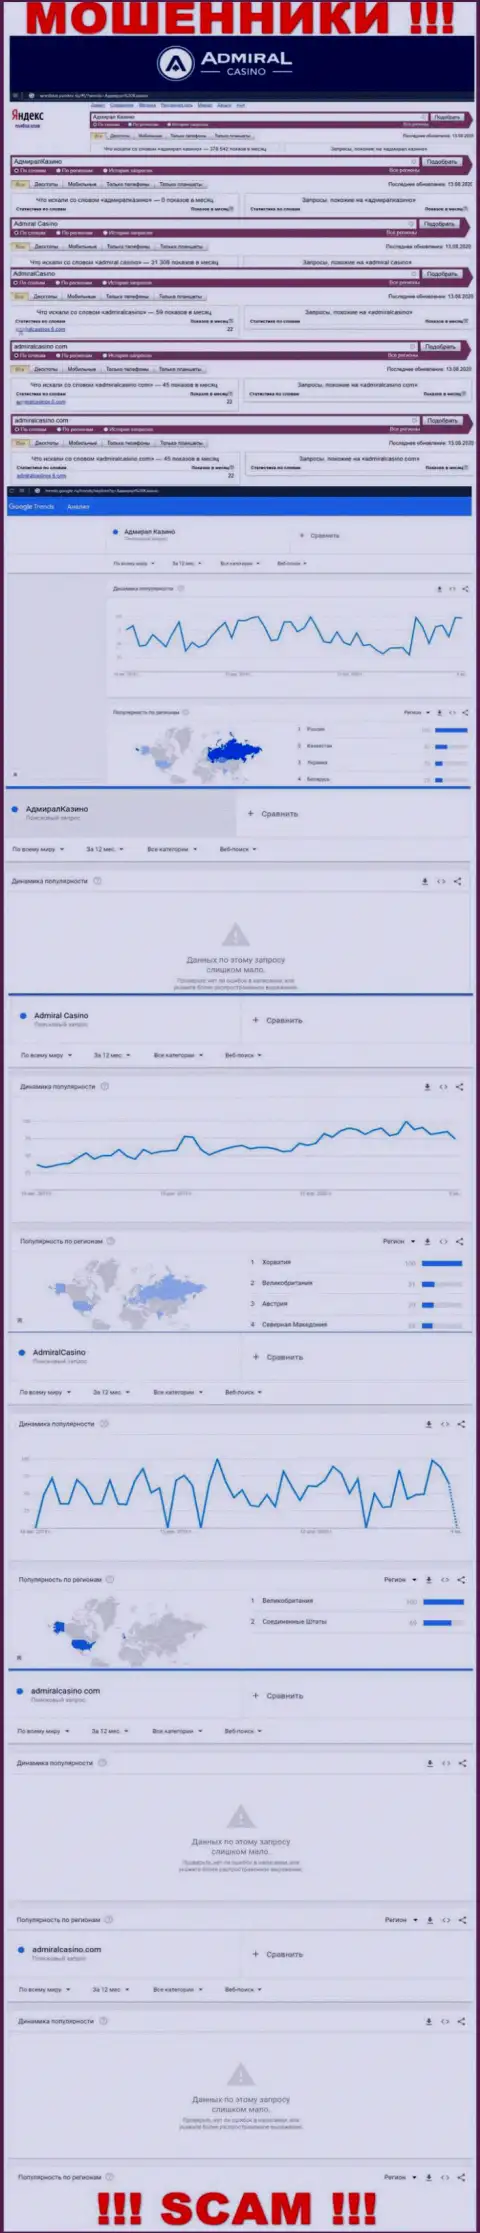 Какое количество людей пытались найти информацию о АдмиралКазино - статистика поисковых запросов по указанной компании